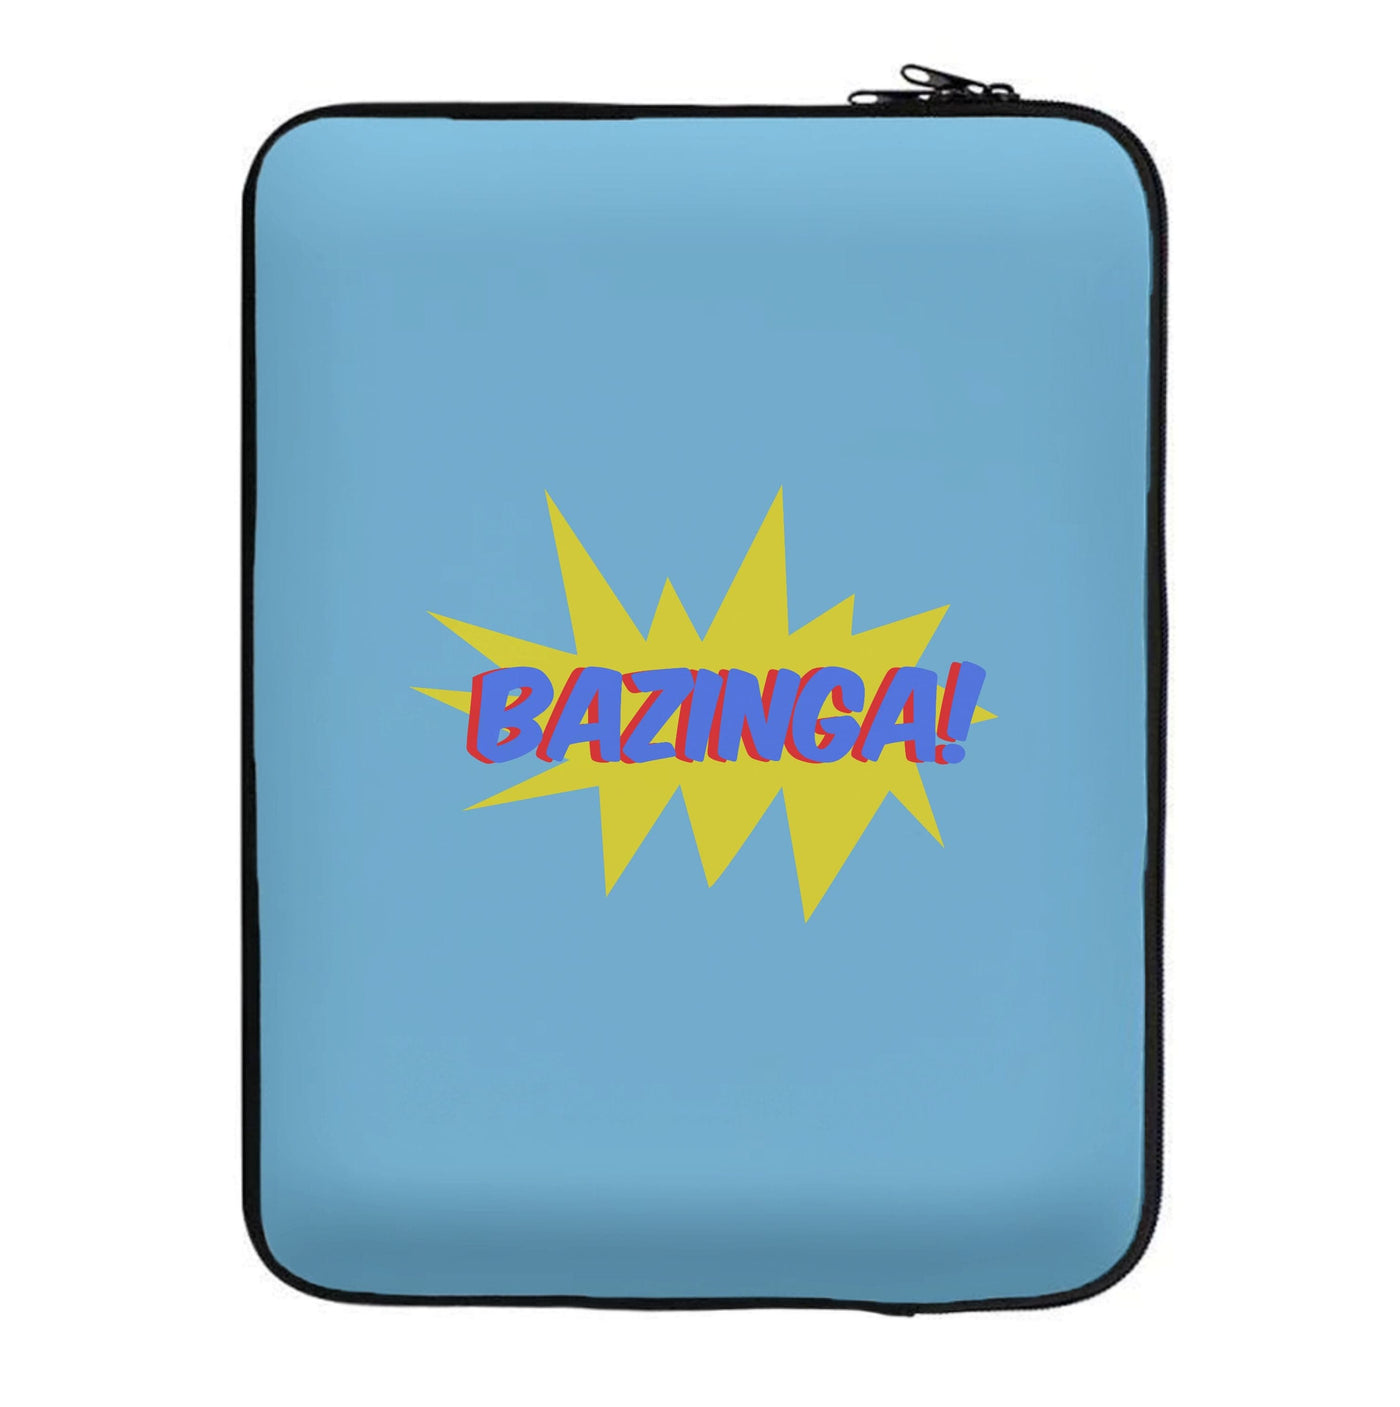 Bazinga! - TV Quotes Laptop Sleeve